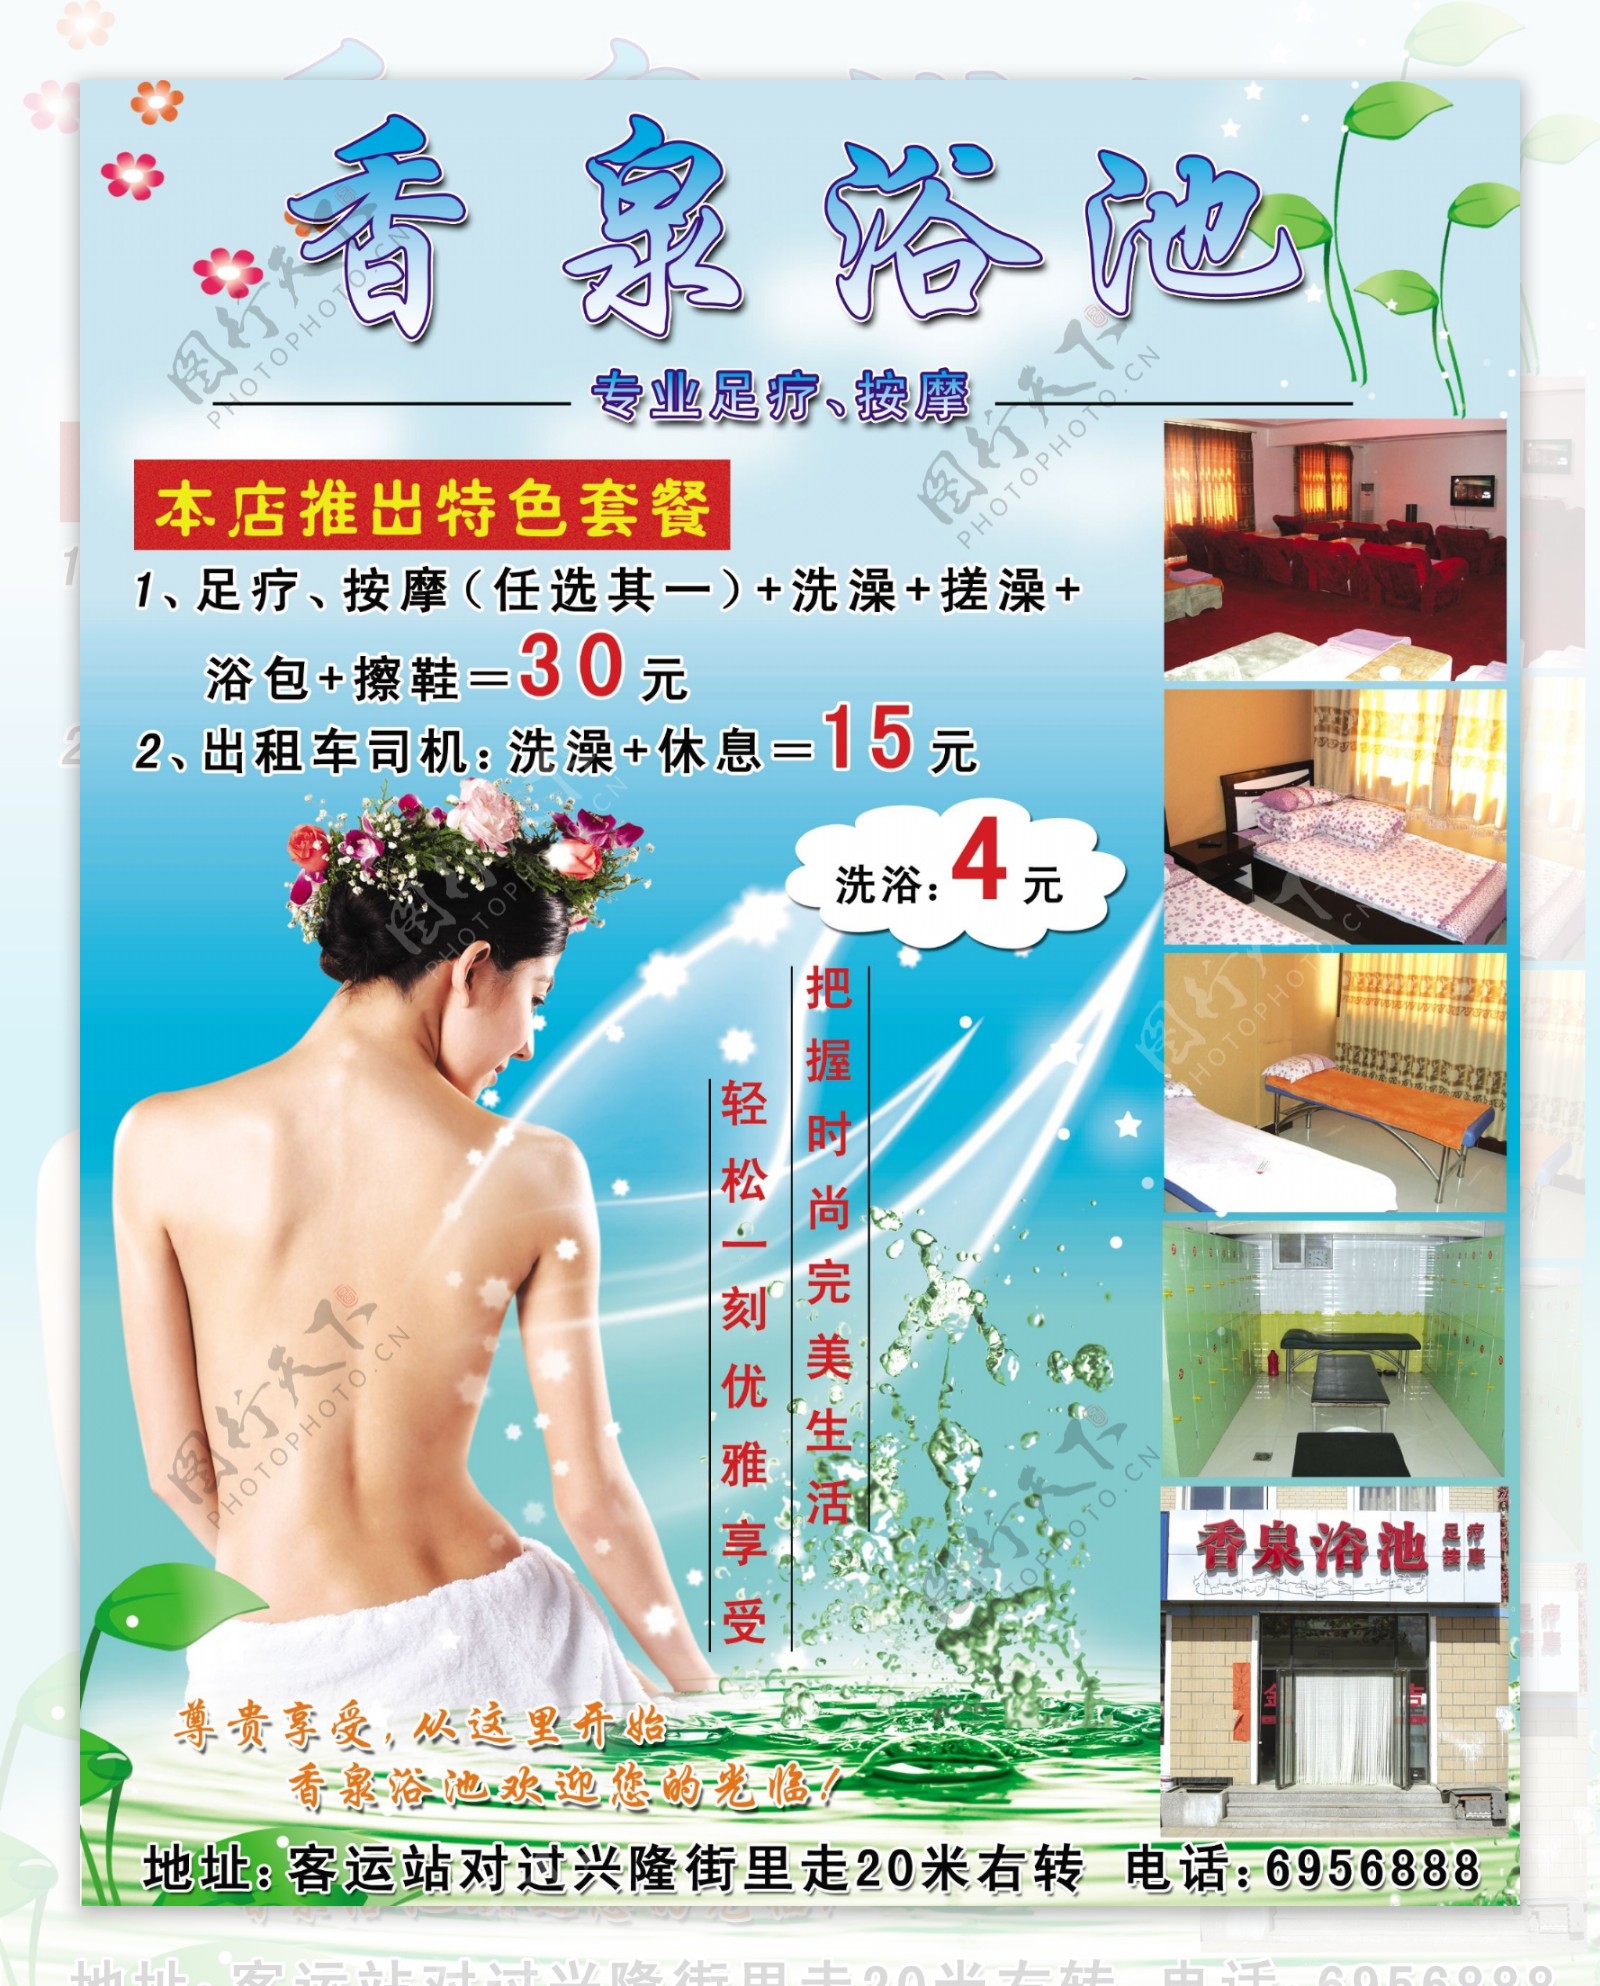 洗浴中心广告浴池图片